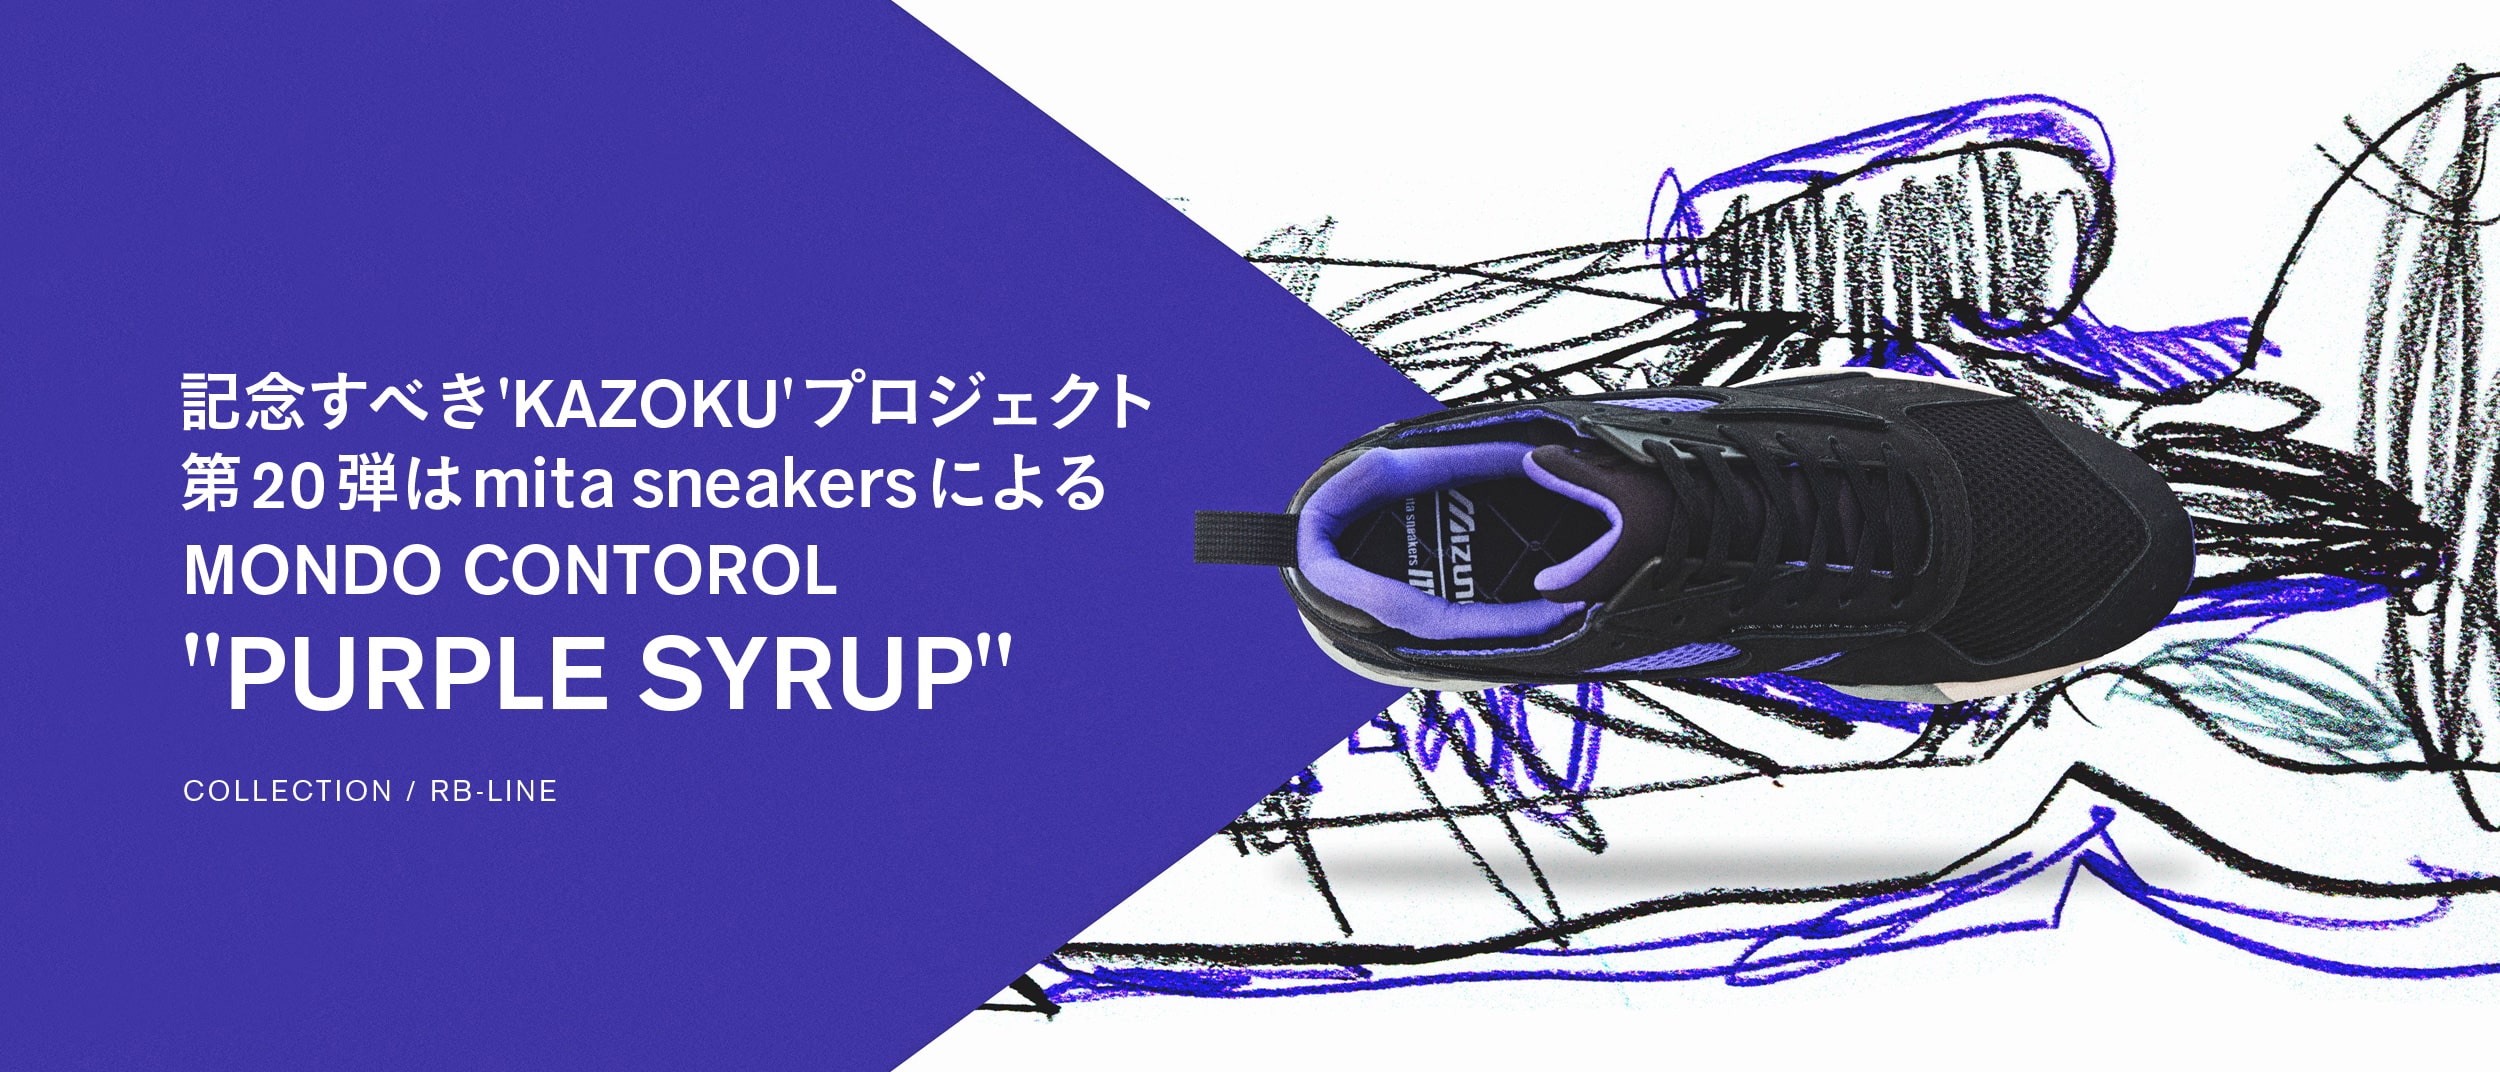 記念すべき'KAZOKU'プロジェクト第20弾は mita sneakersによるMONDO CONTOROL "PURPLE SYRUP" 